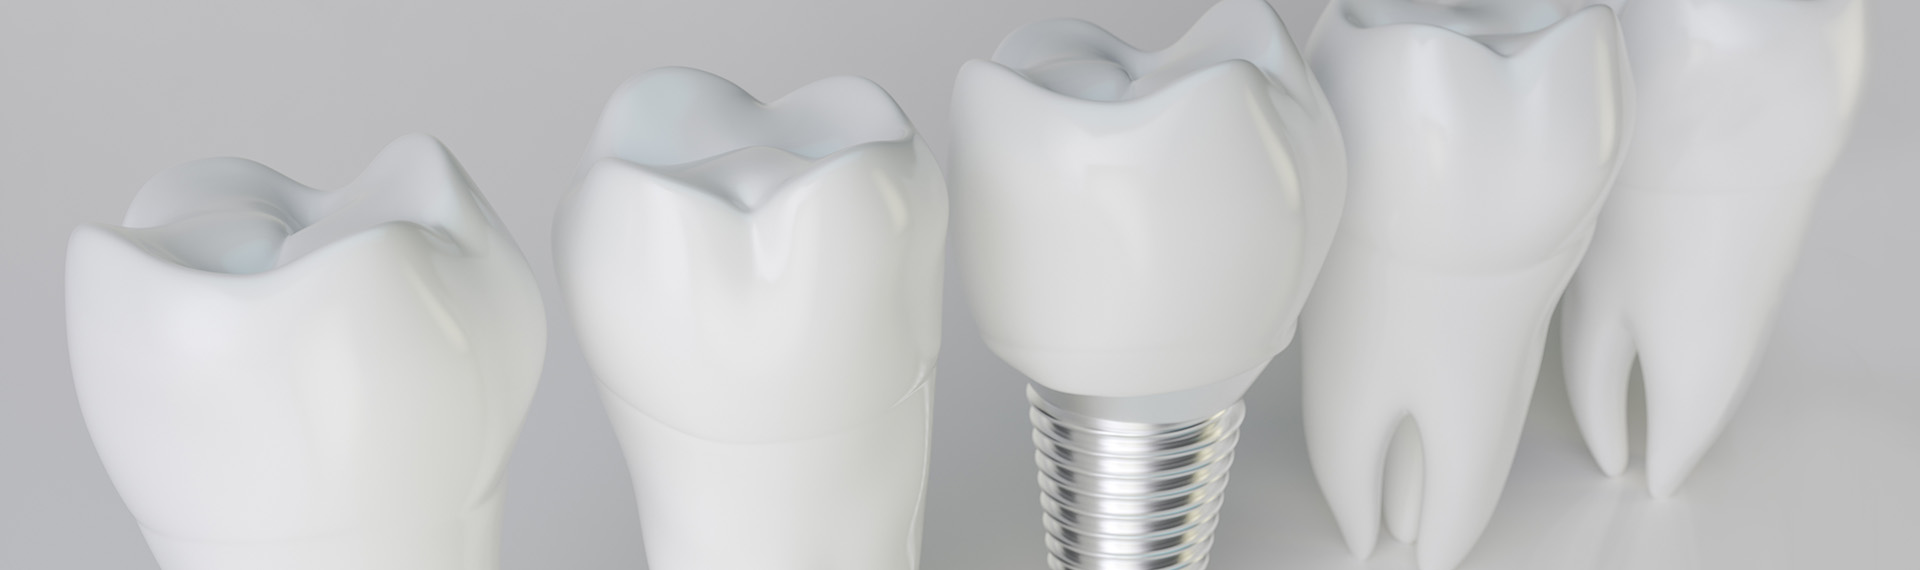 Materialien für Zahnimplantate